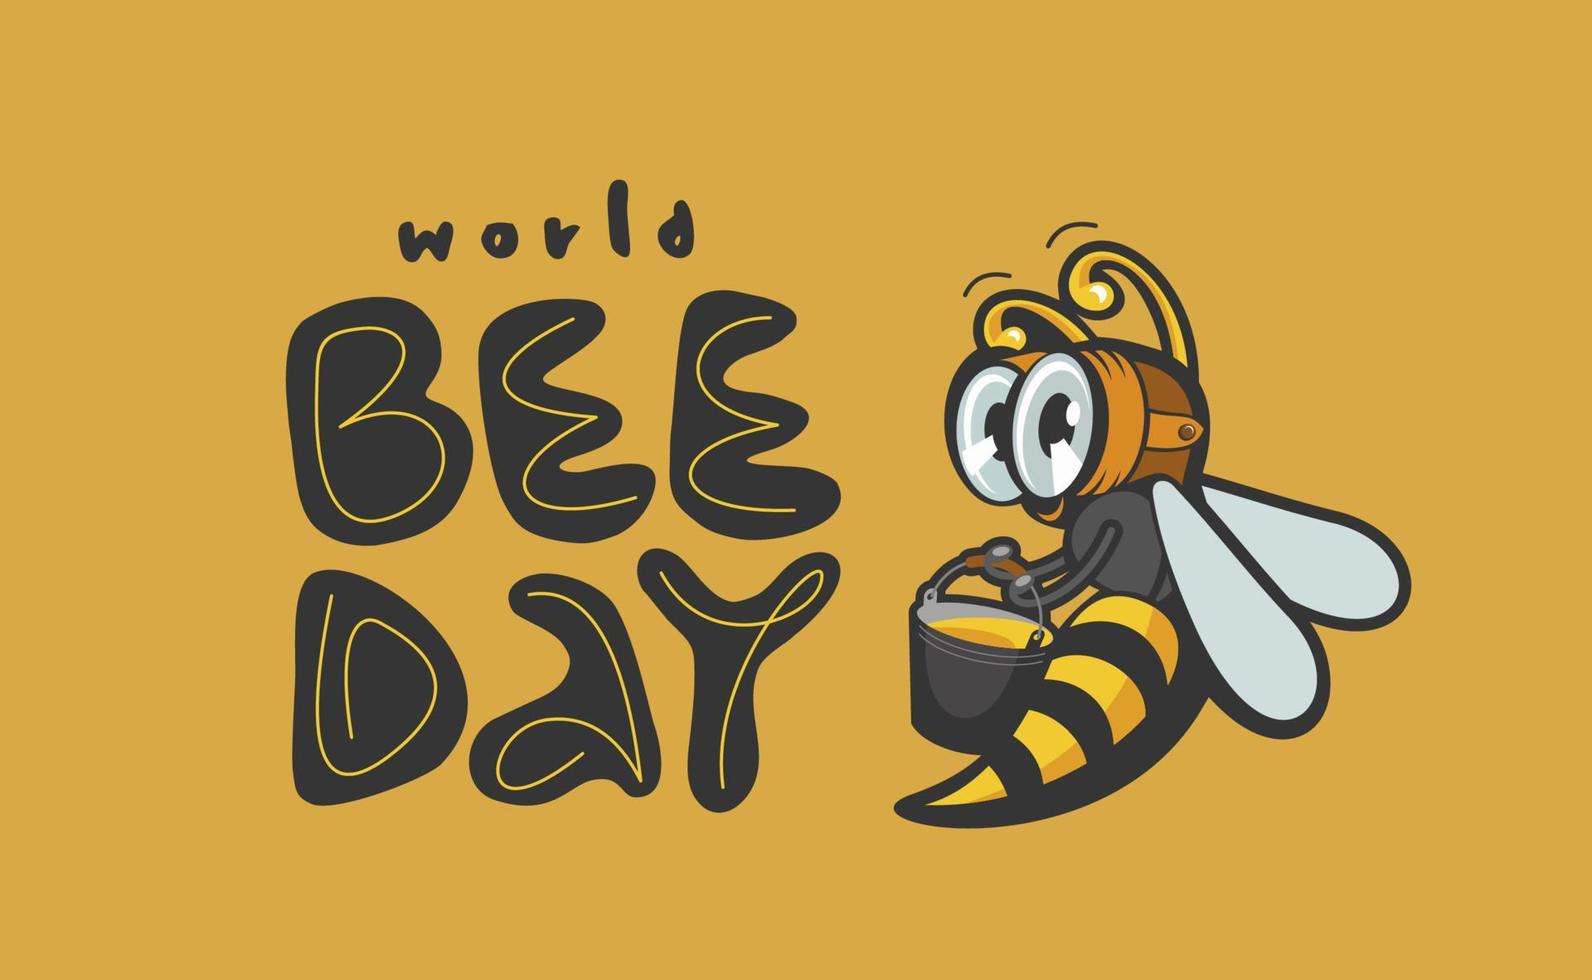 plantilla de diseño vectorial del día mundial de la abeja. vector